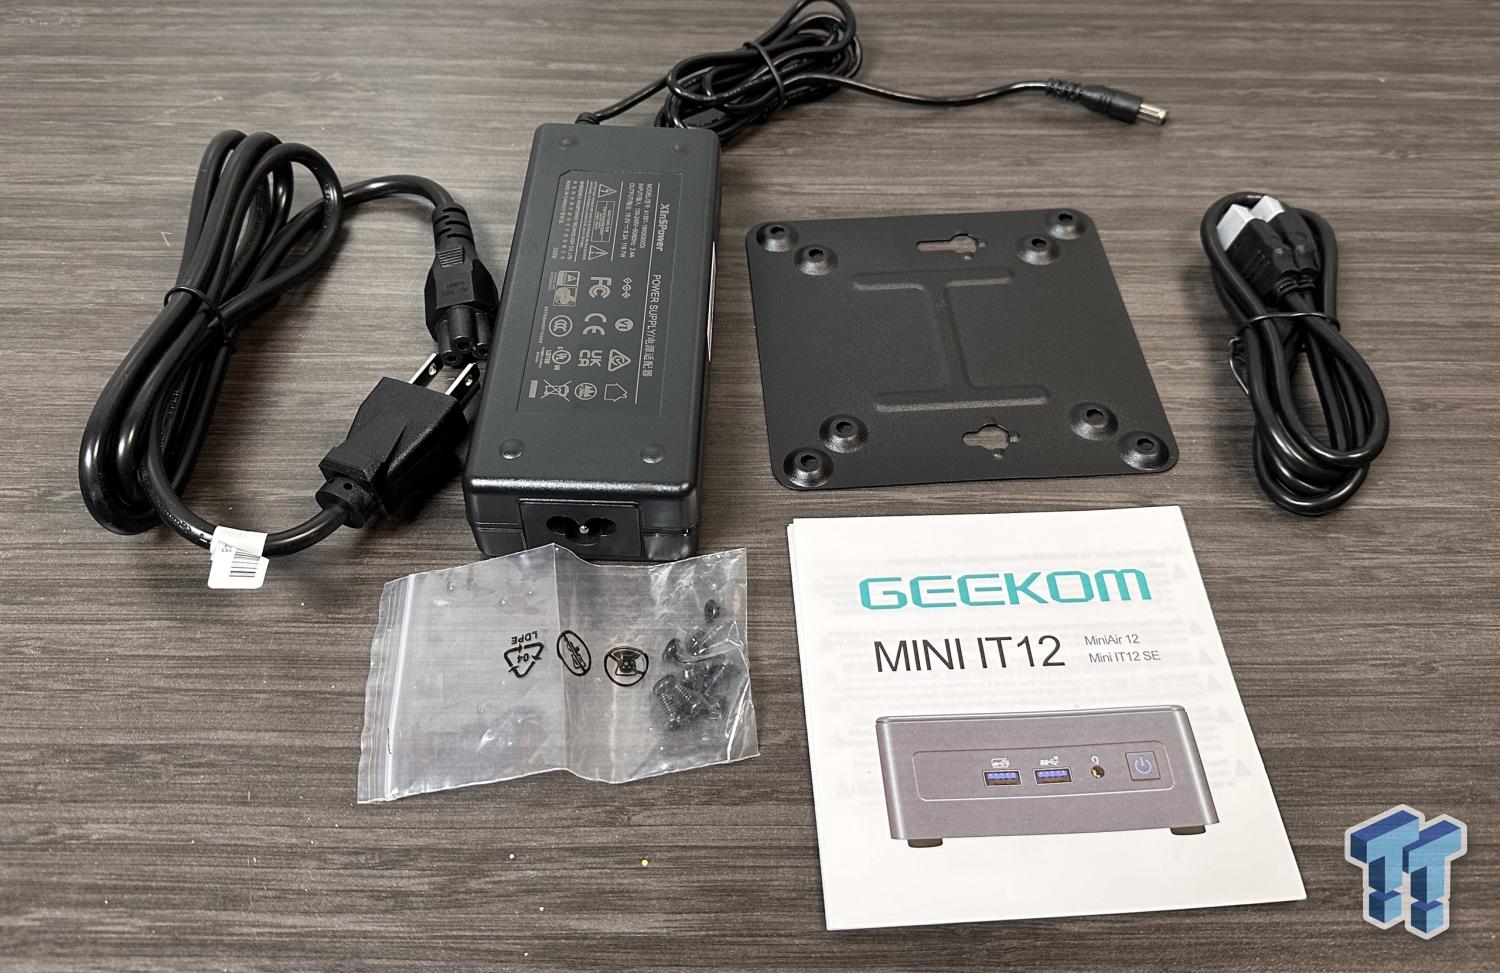 GEEKOM Mini IT12: The New NUC 12 Mini PC